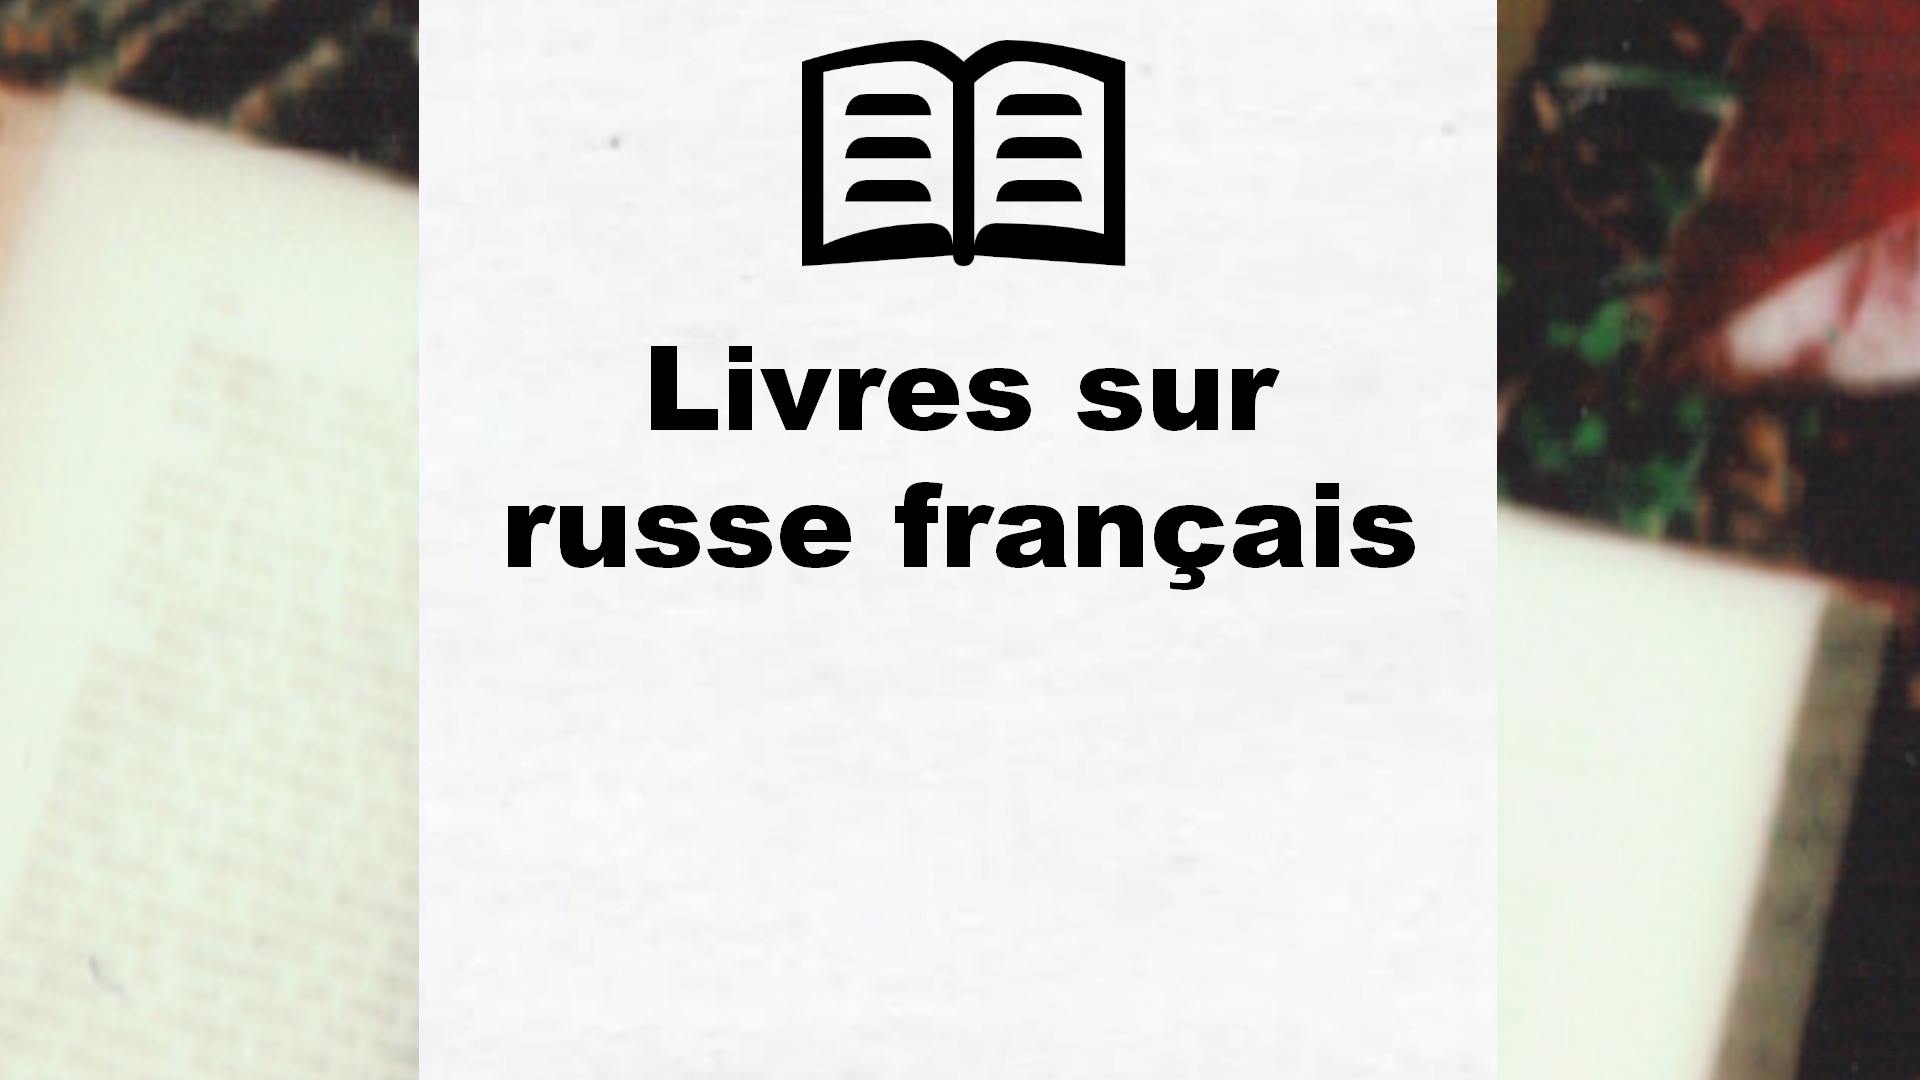 Livres sur russe français